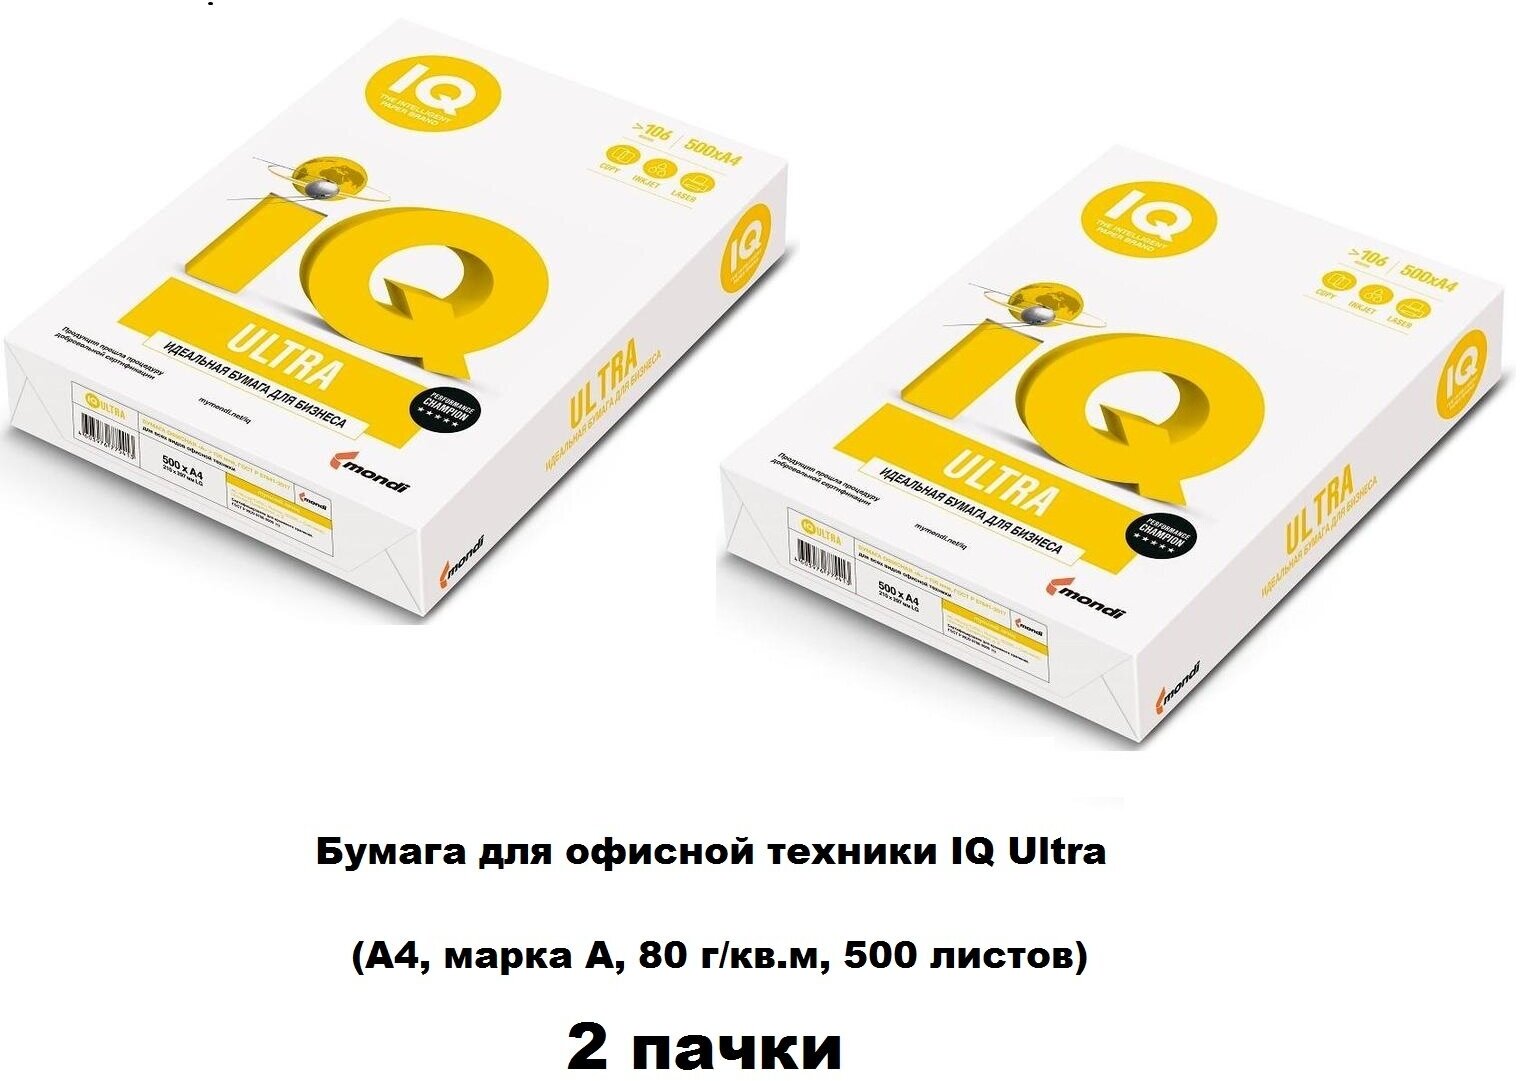 Бумага для офисной техники IQ Ultra (А4, марка A, 80 г/кв. м, 500 листов)- 2 пачки